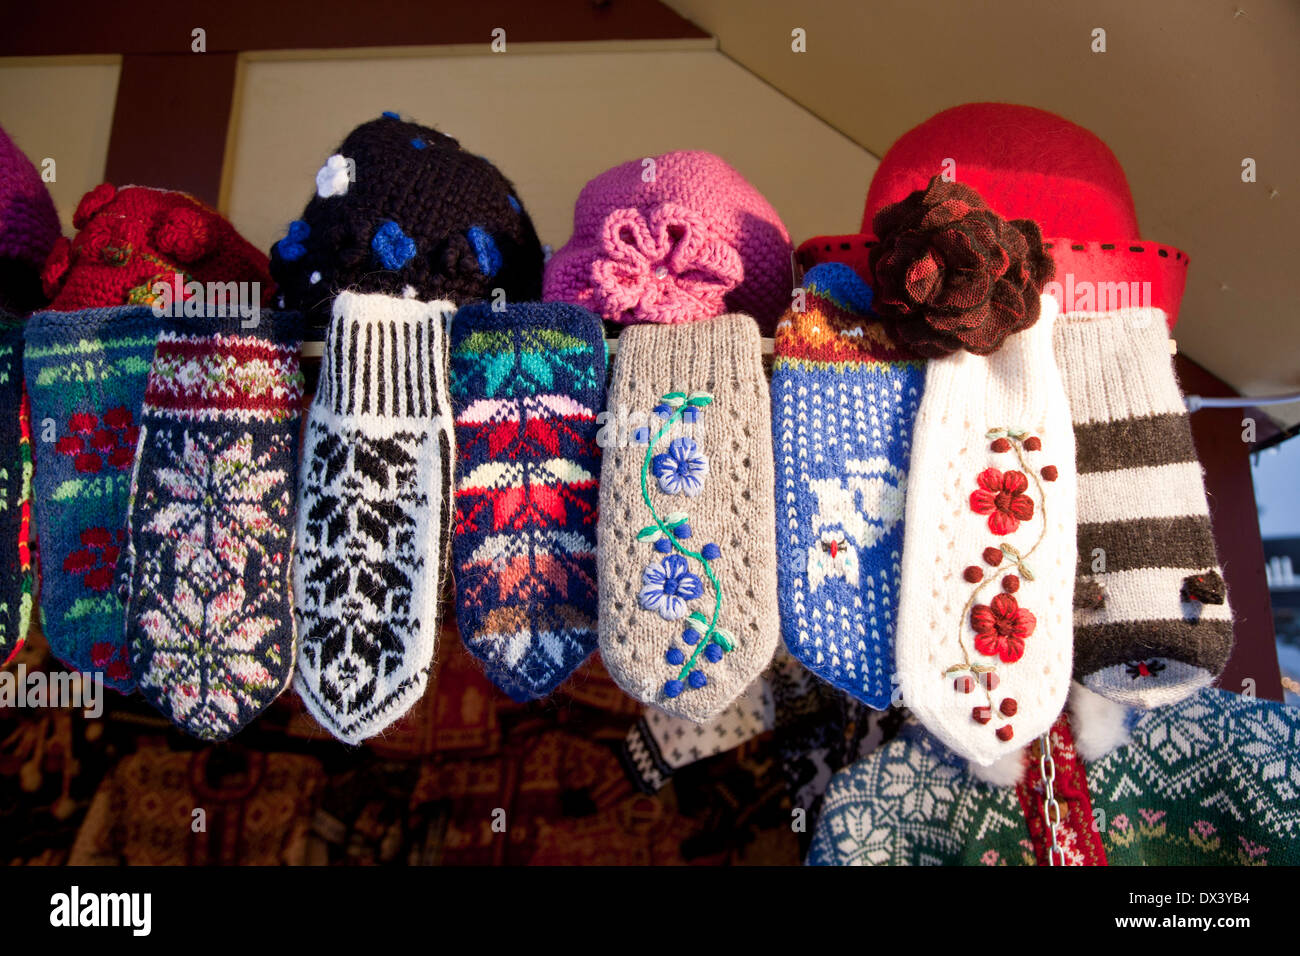 Wollene Handschuhe mit traditionellen Muster auf dem Markt in Tallinn,  Estland Stockfotografie - Alamy